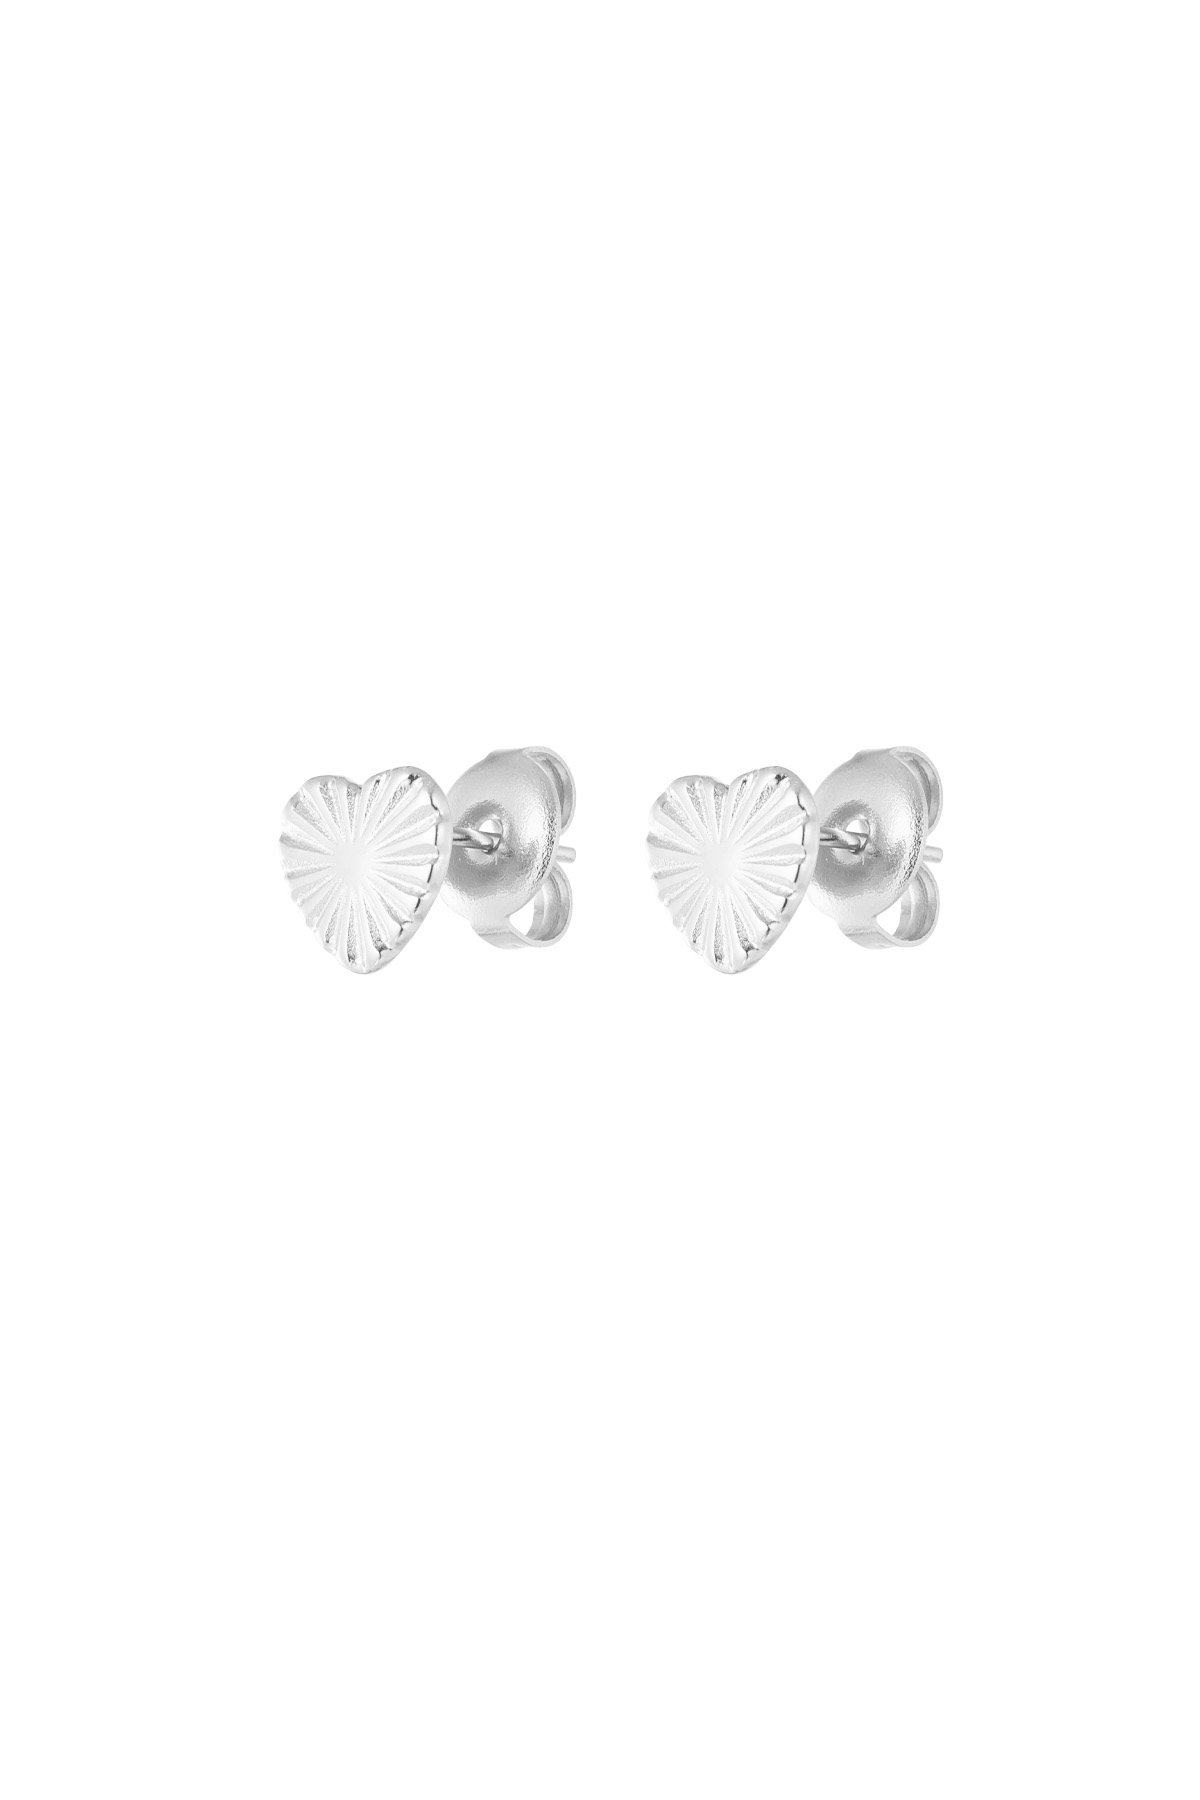 Kalp şeklinde desenli küpe - gümüş h5 